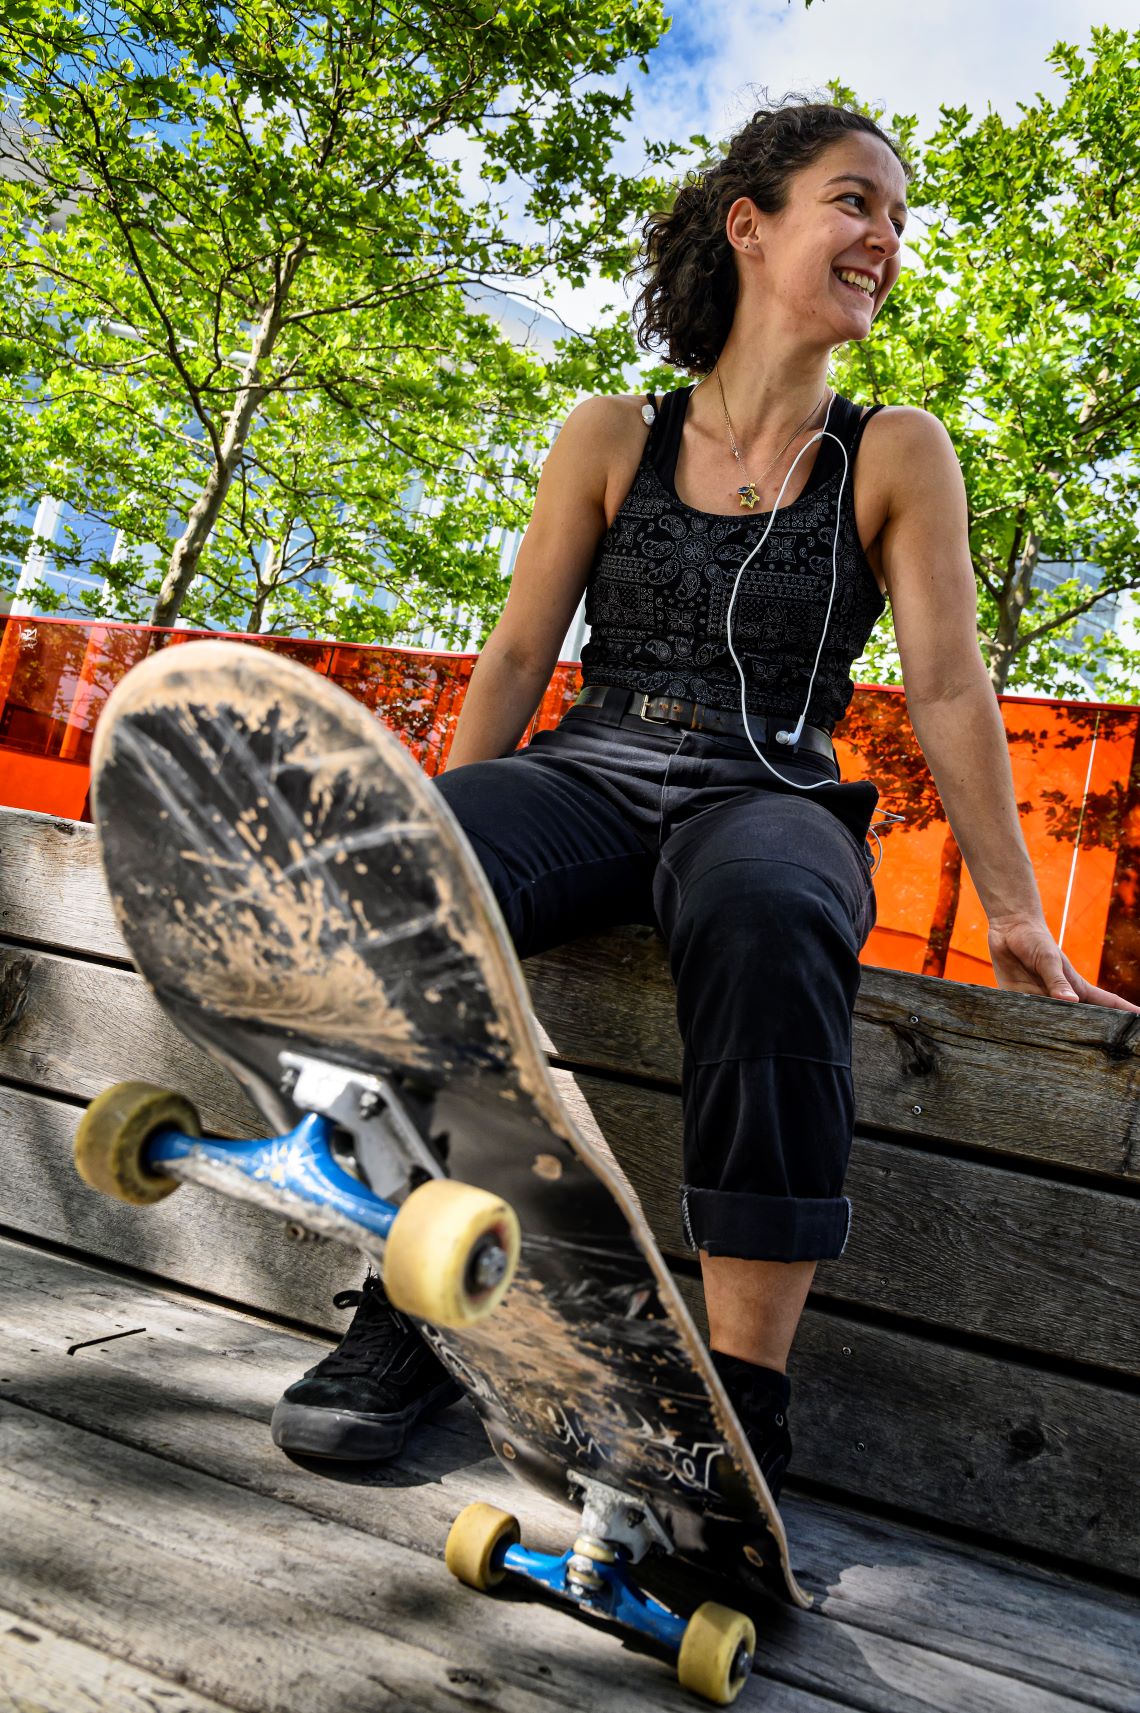 Une femme est assise, souriante, sur un banc et regarde vers la gauche. Son pied est posé sur un skateboard, qui se trouve au premier plan de la photo.